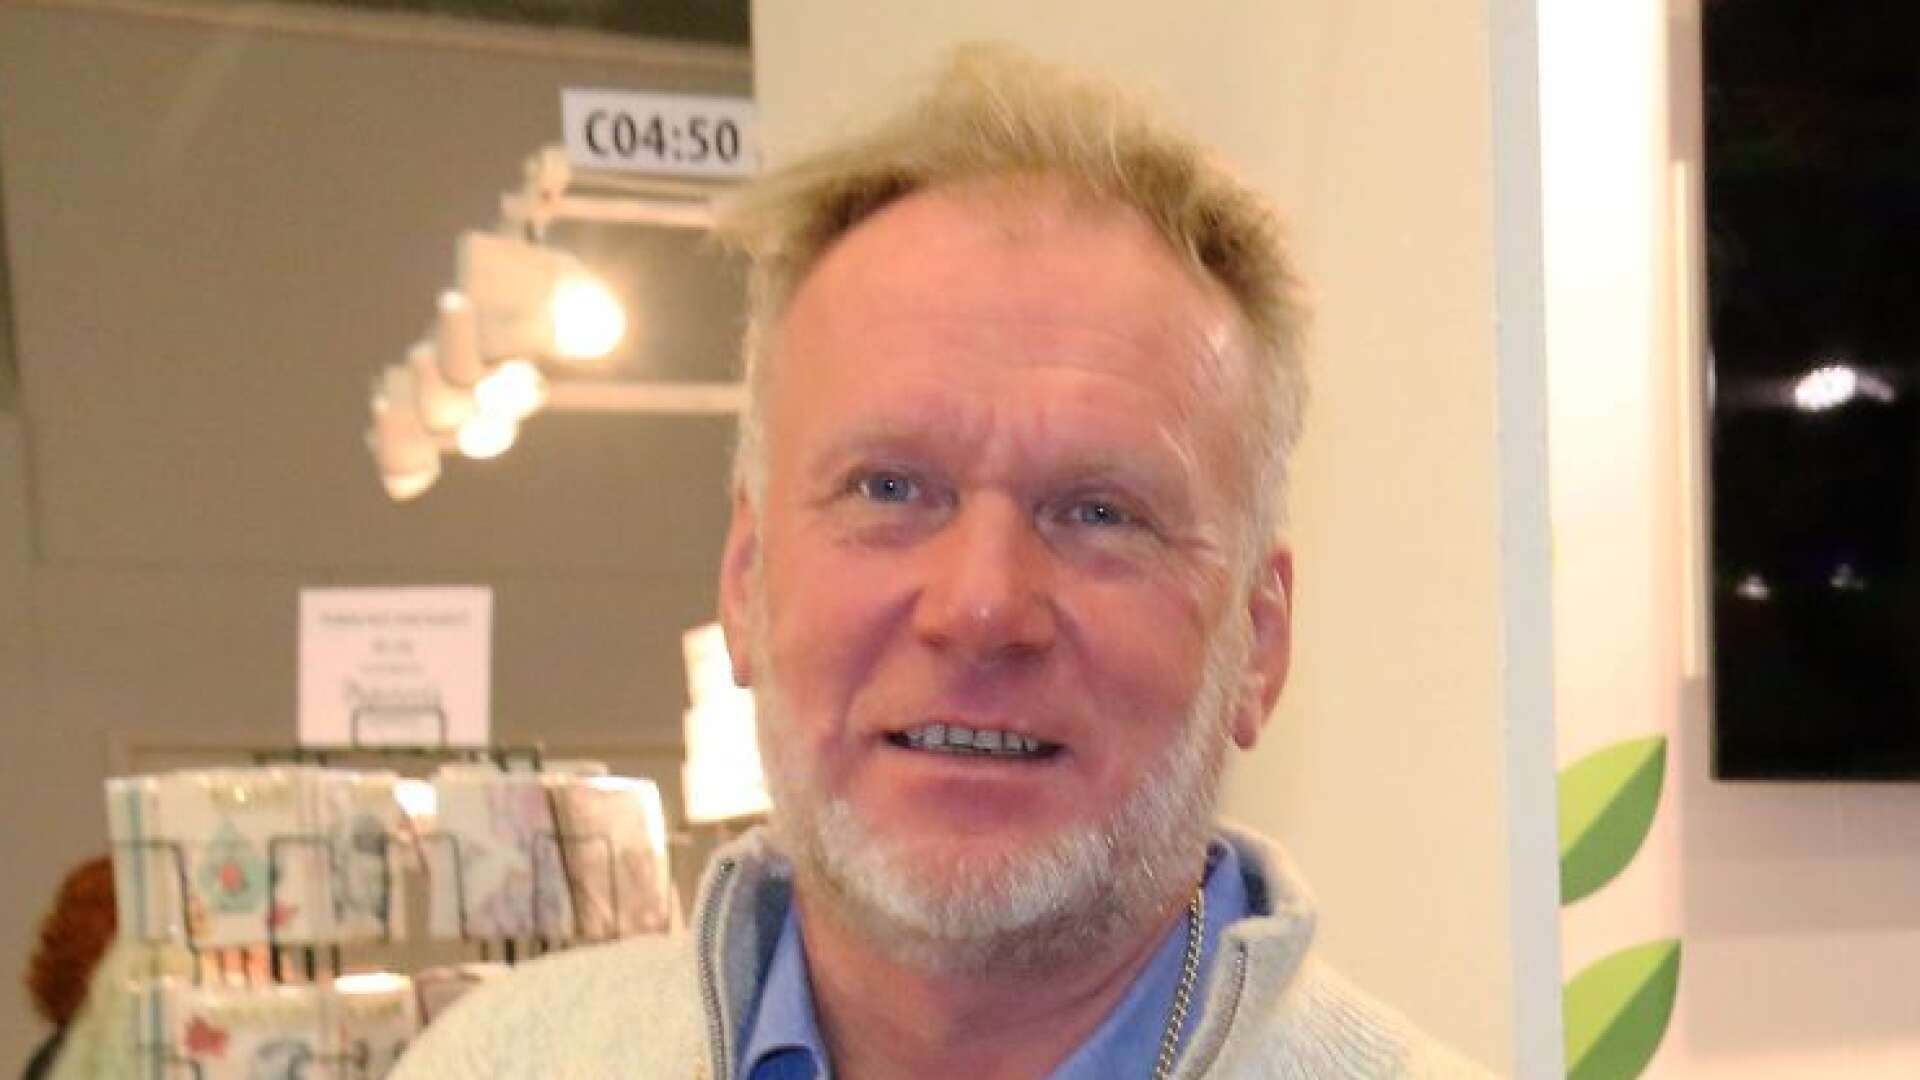 Kjell Johansson från Steneby var i Christchurch, Nya Zeeland när terrorattentatet som skördade ett 50-tal liv inträffade.